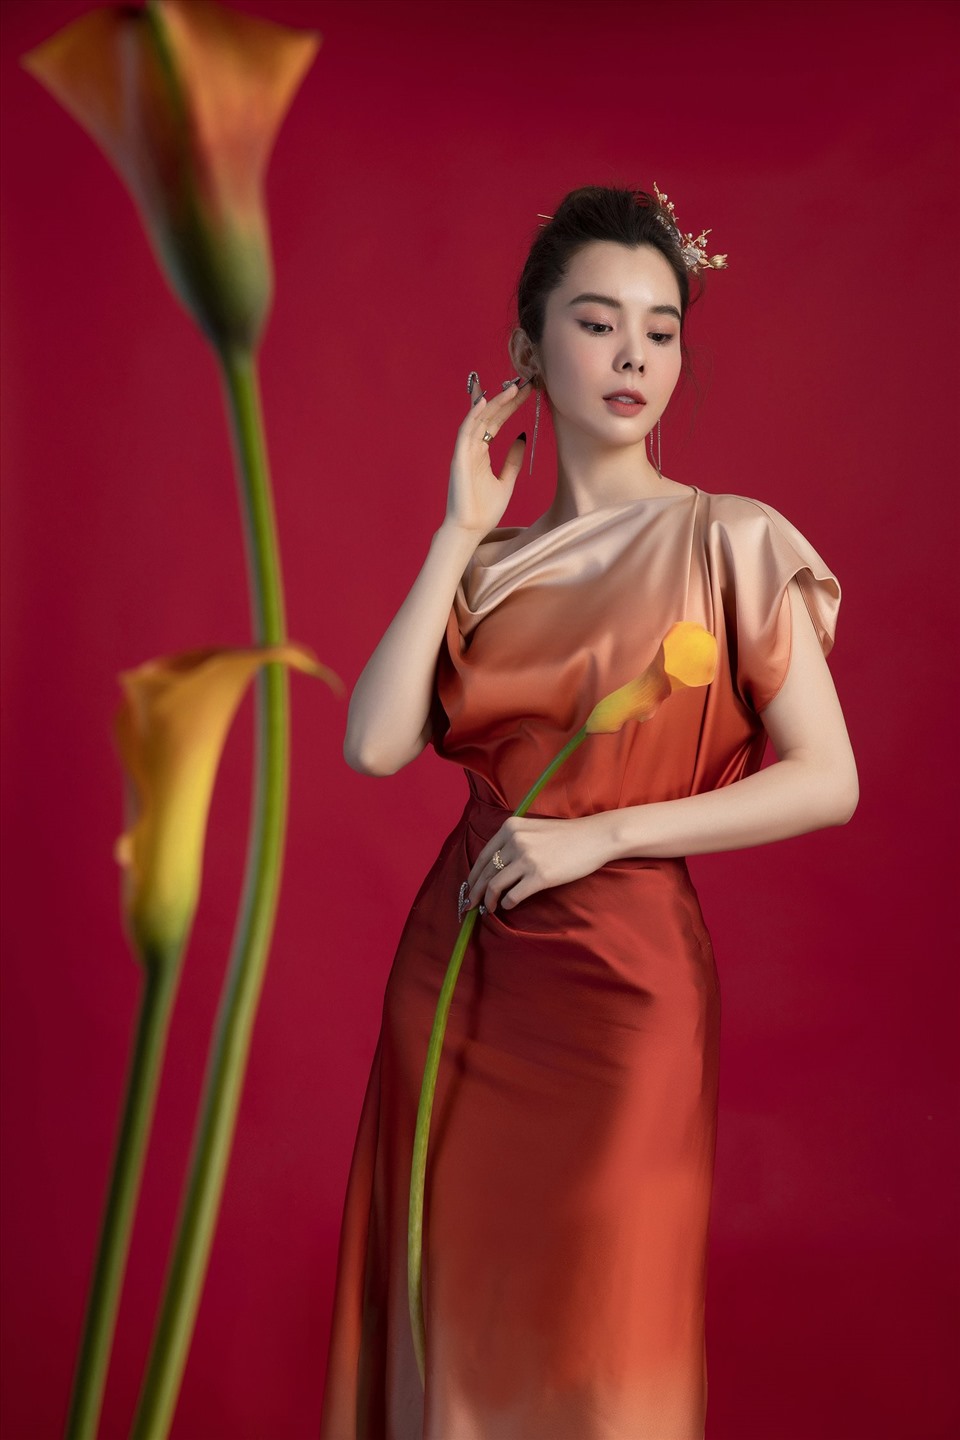 Lựa chọn những thiết kế váy nhẹ nhàng, chủ yếu là chất liệu lụa mềm mại khiến thân hình mỏng manh của Huỳnh Vy tựa như một nàng tiên xinh đẹp đang hòa vào không khí của mùa xuân rực rỡ.